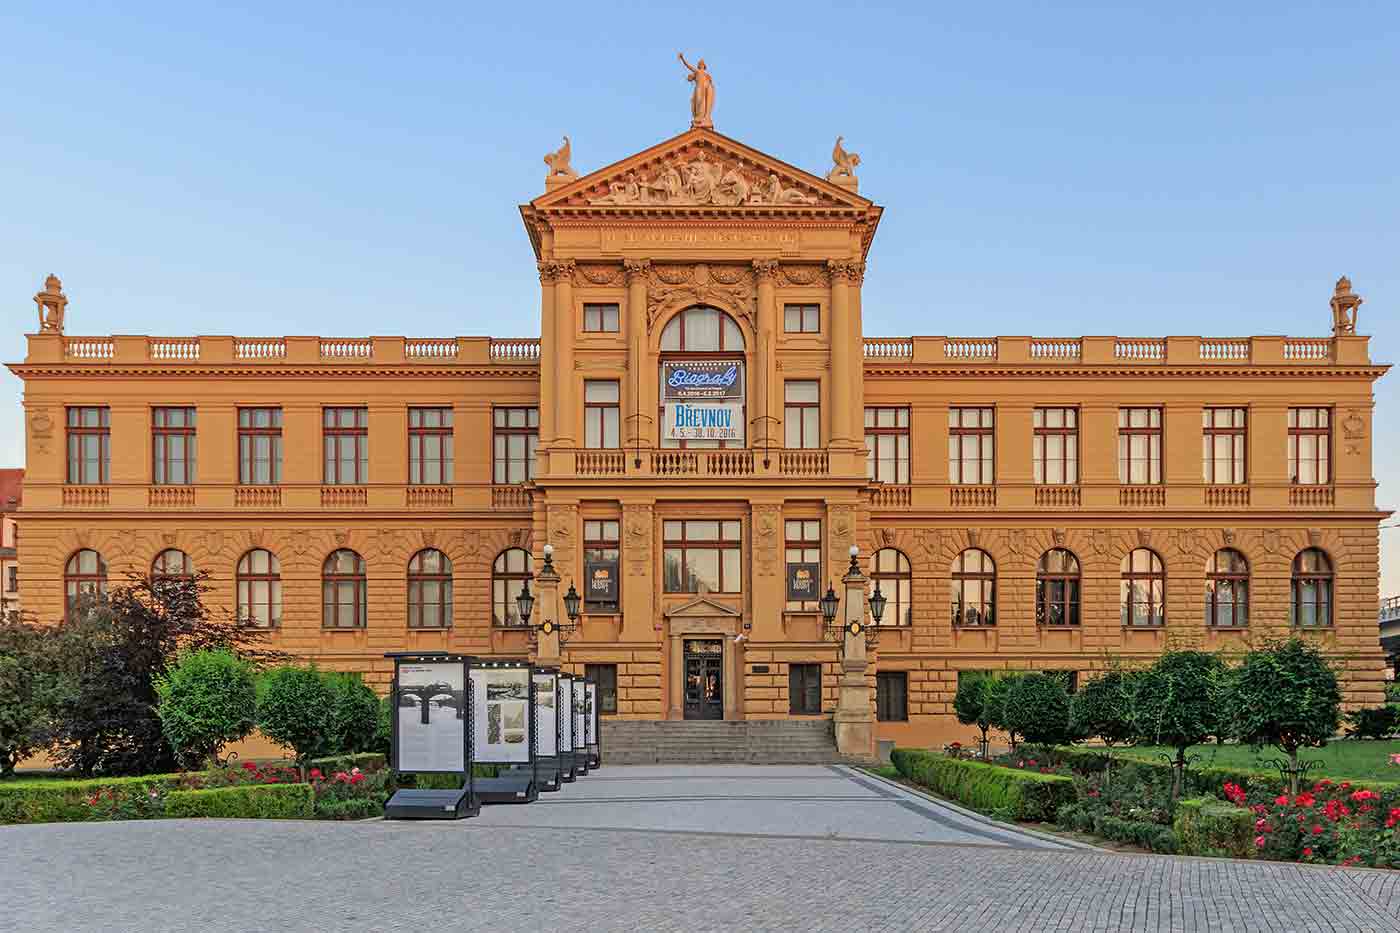 City of Prague Museum